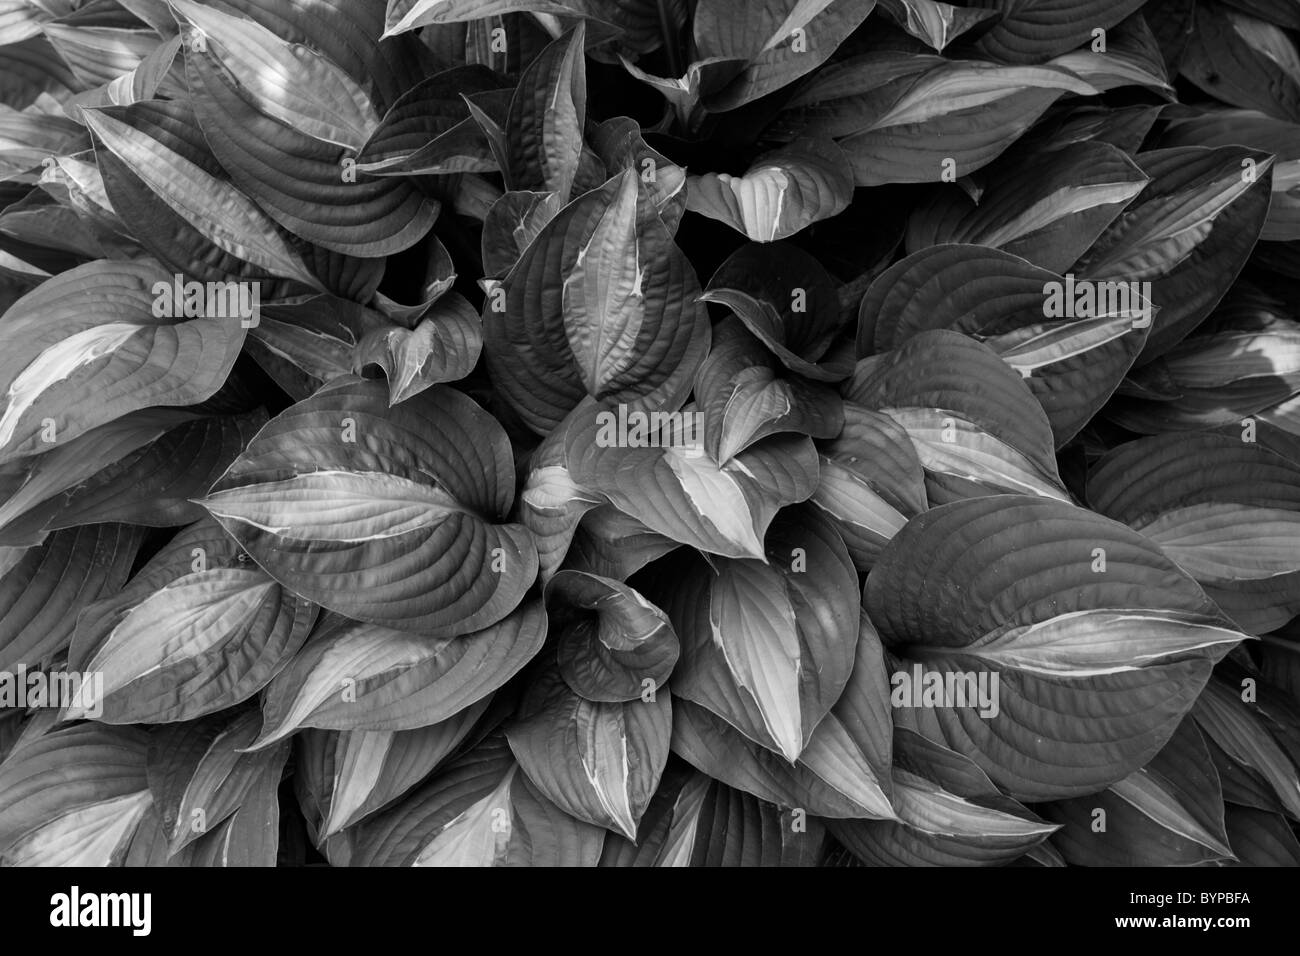 Stati Uniti d'America, North Carolina, Durham, Close-up di densamente impaccate le foglie di piante a Sarah P. Duke Gardens presso la Duke University Foto Stock